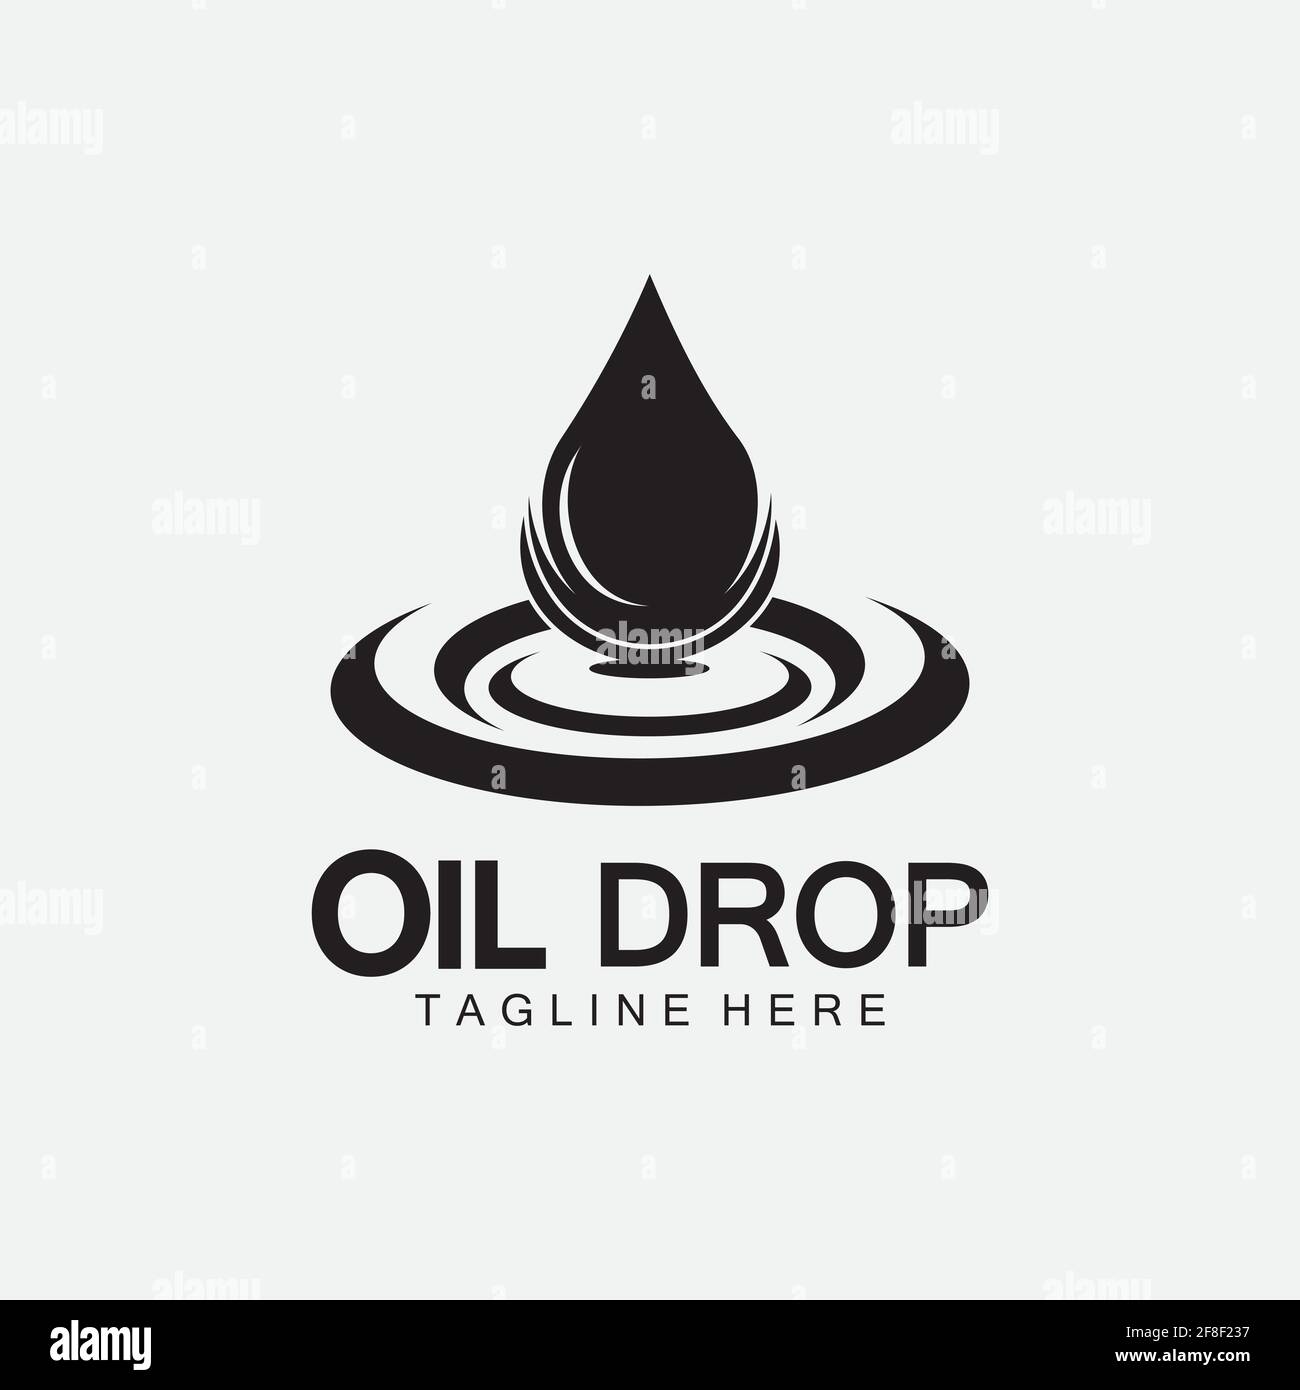 Plantilla de diseño de ilustración vectorial del logotipo de OIL DROP, plantilla vectorial de inspiración de diseño para el logotipo de la empresa industrial Ilustración del Vector